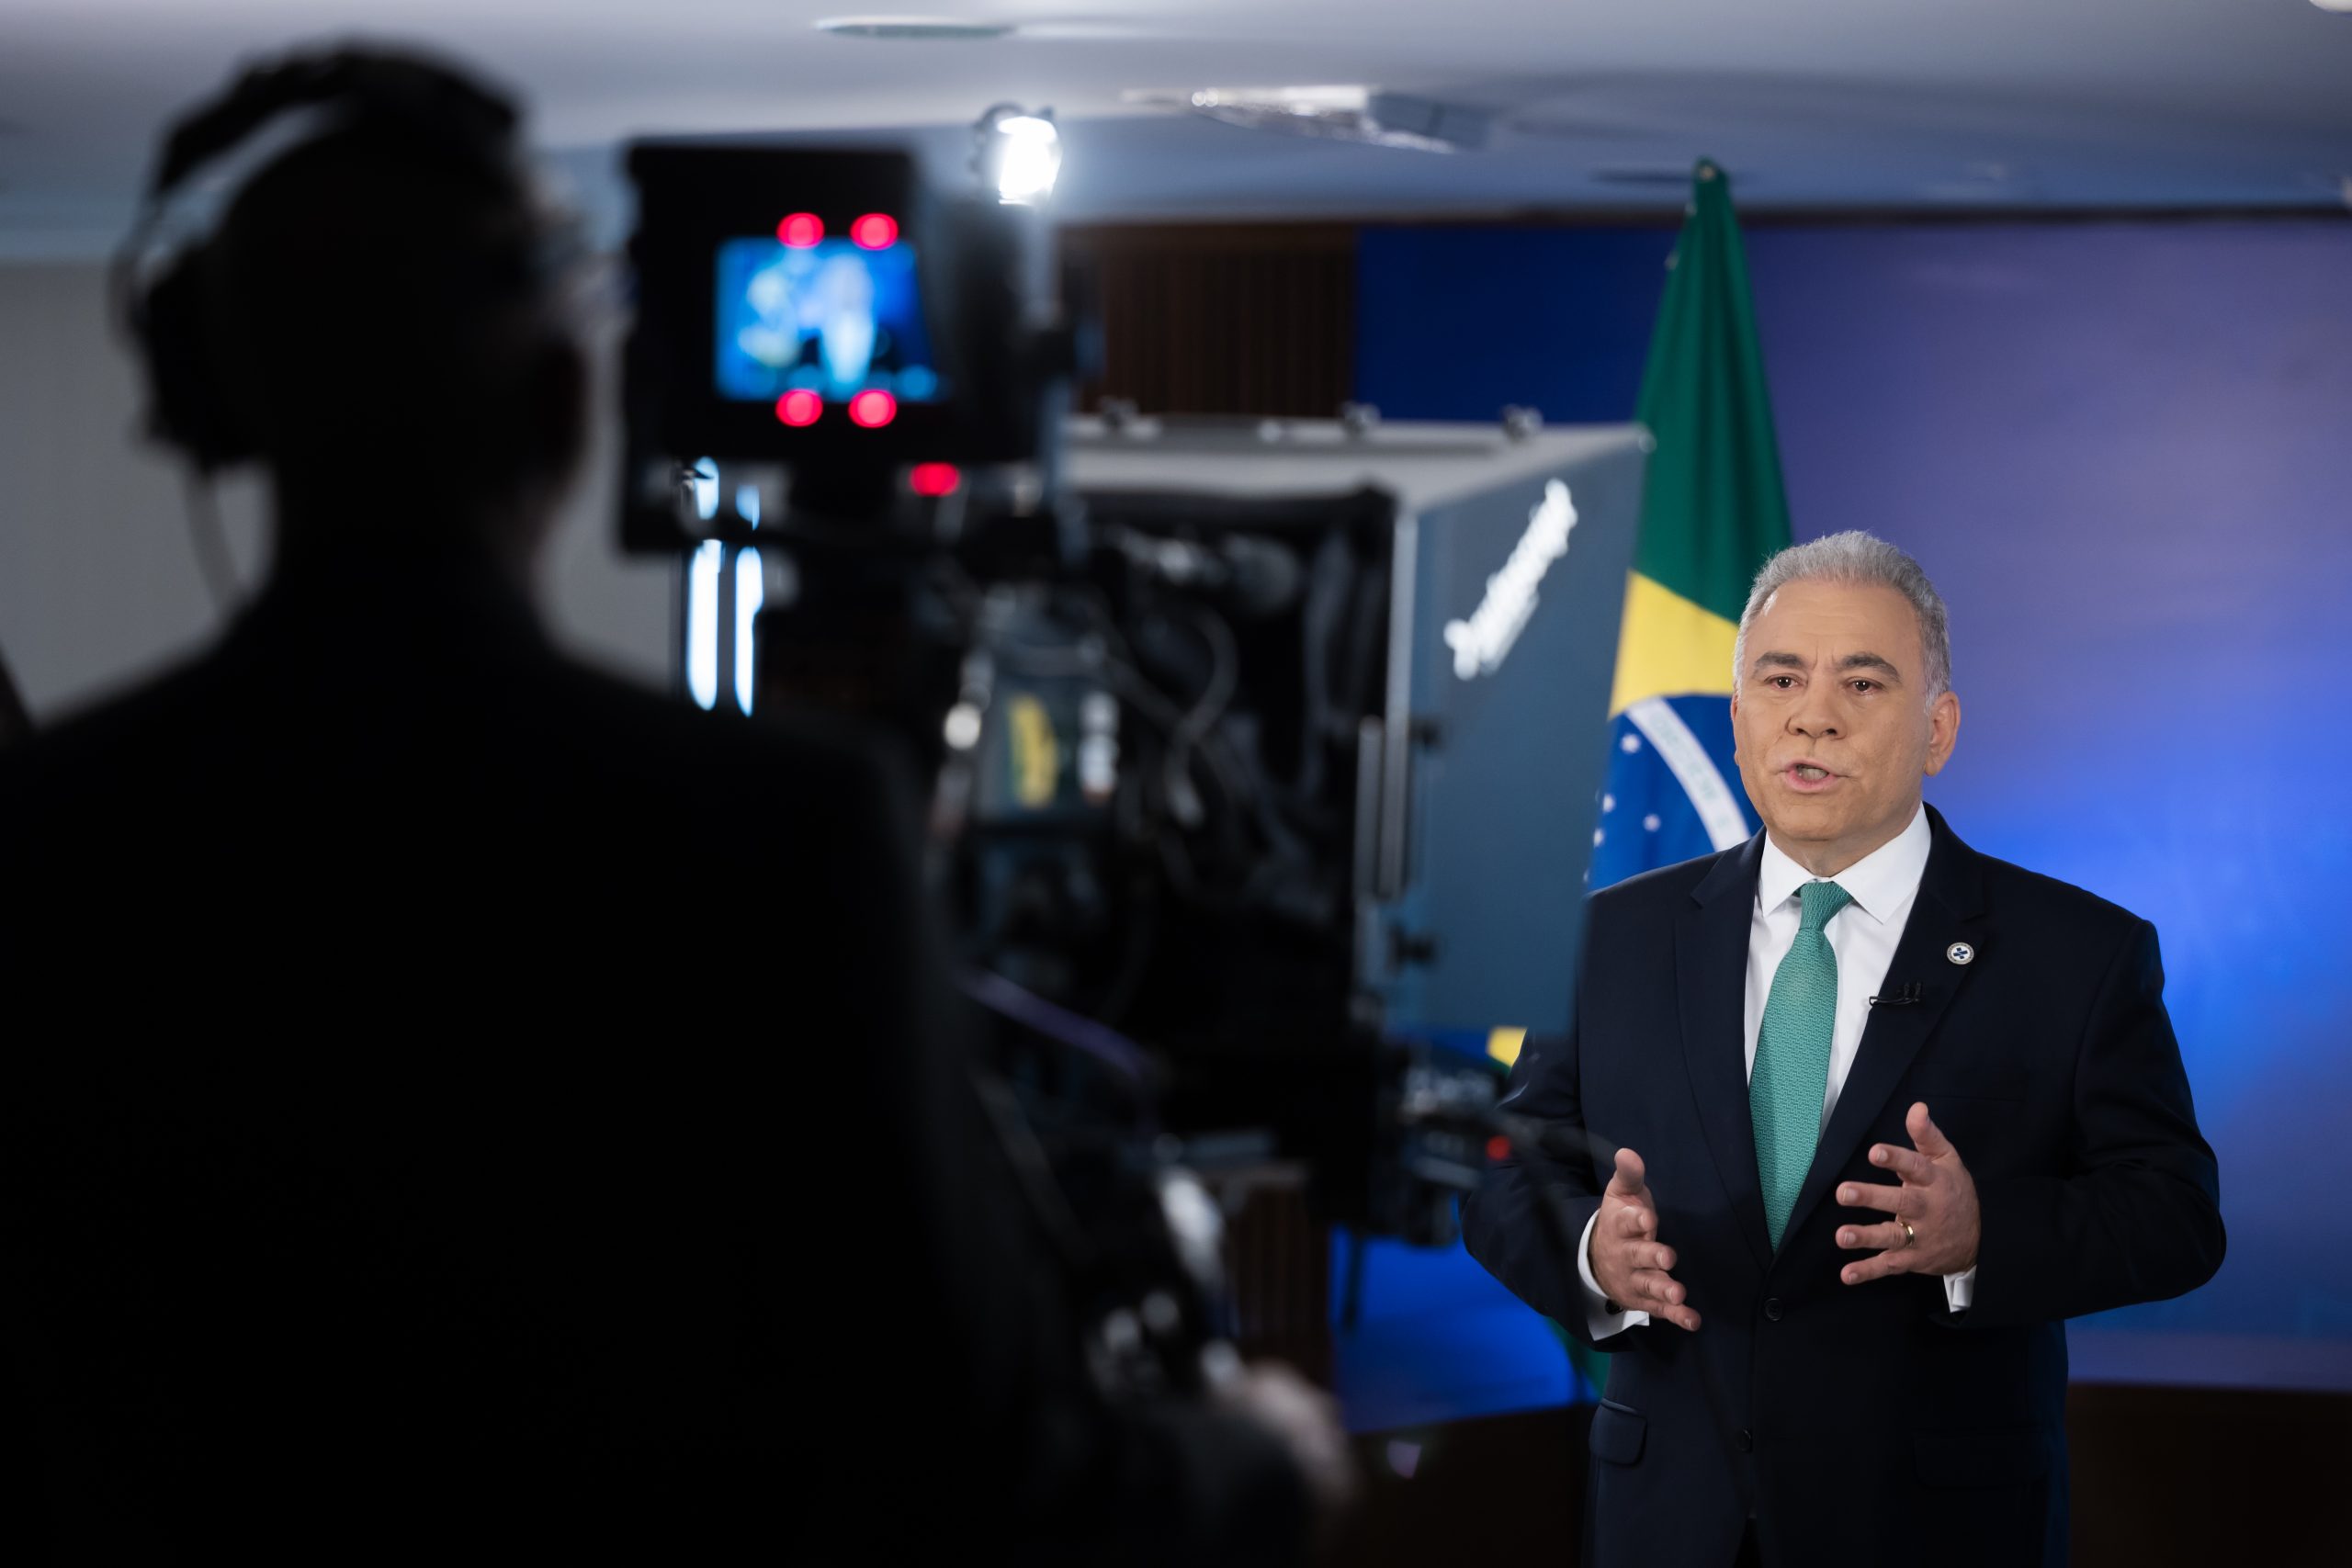 Pronunciamento do Ministro da saúde, Marcelo Queiroga. Brasília, 16.04.2022. Fotos: Walterson Rosa/MS